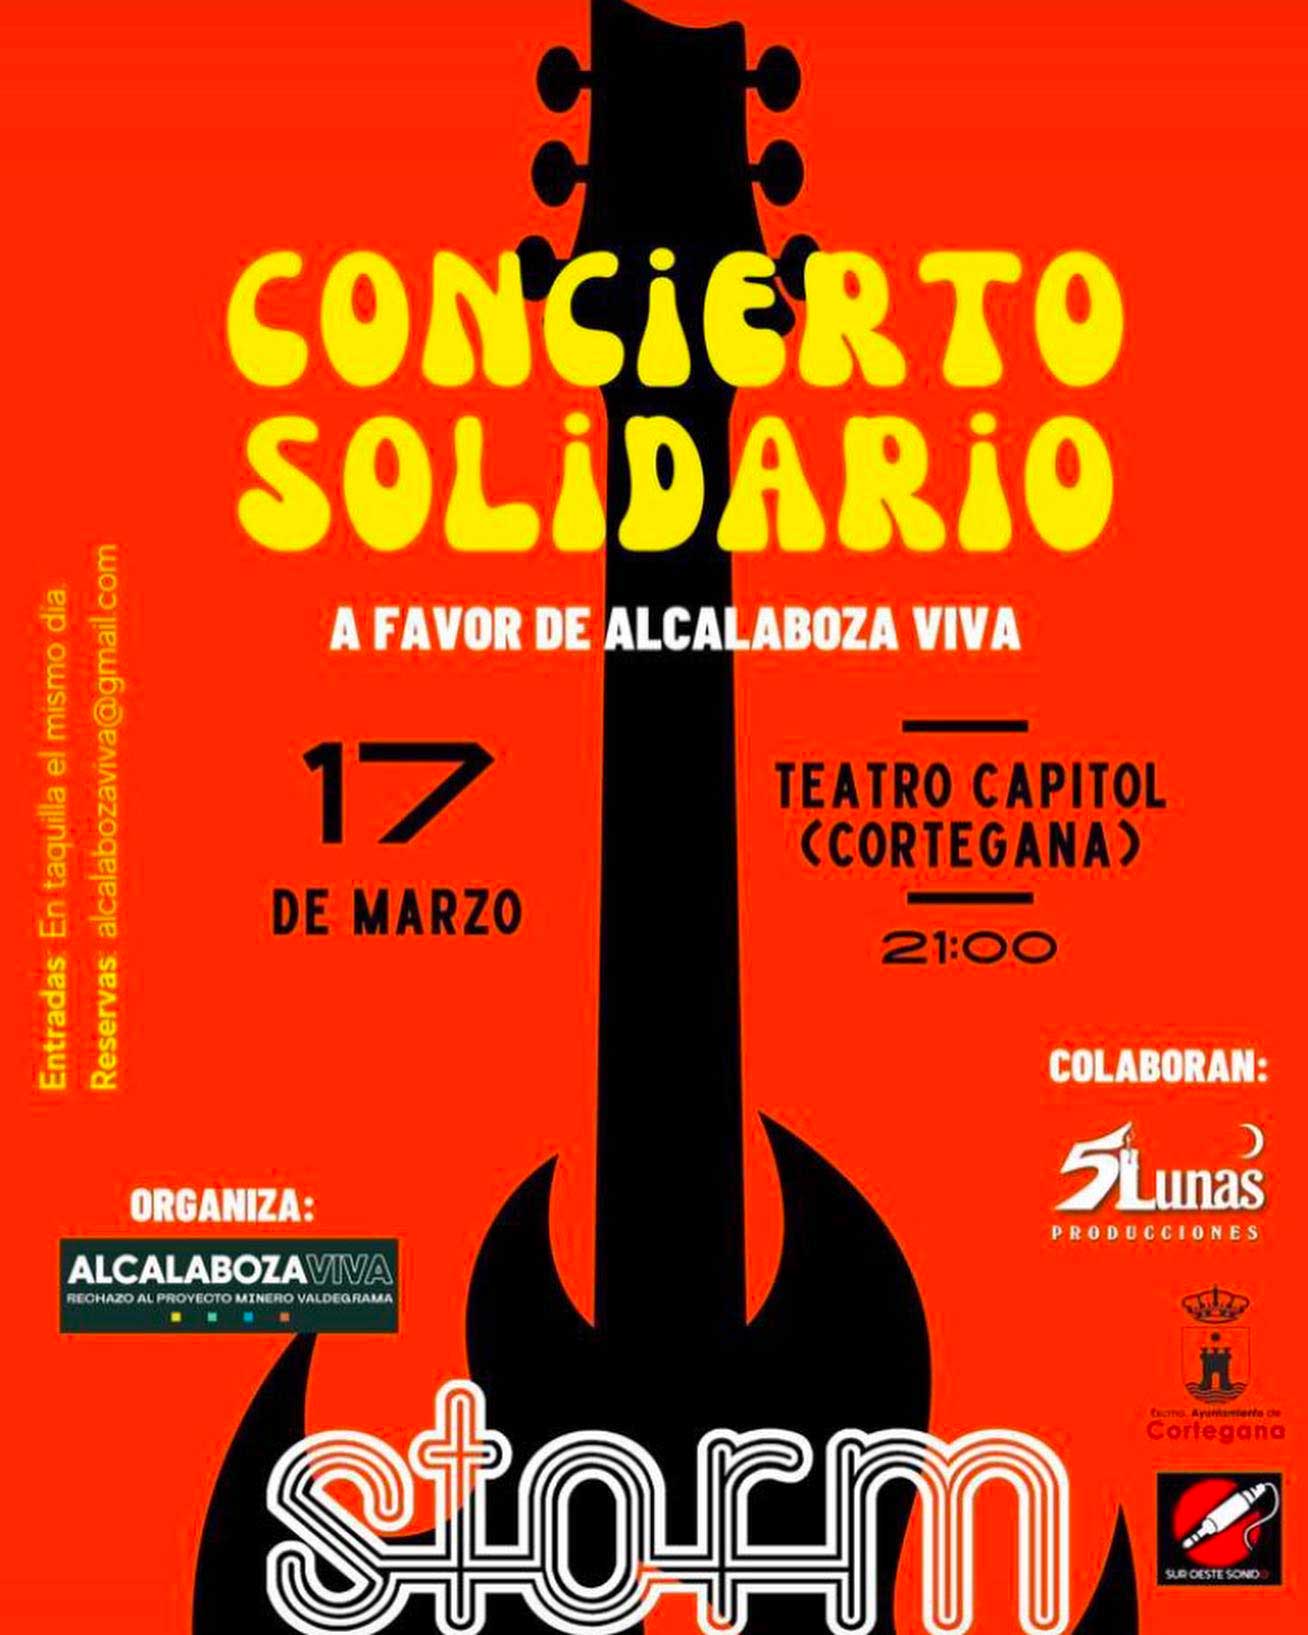 Concierto solidario Storm Alcalaboza viva 17 de marzo Cortegana